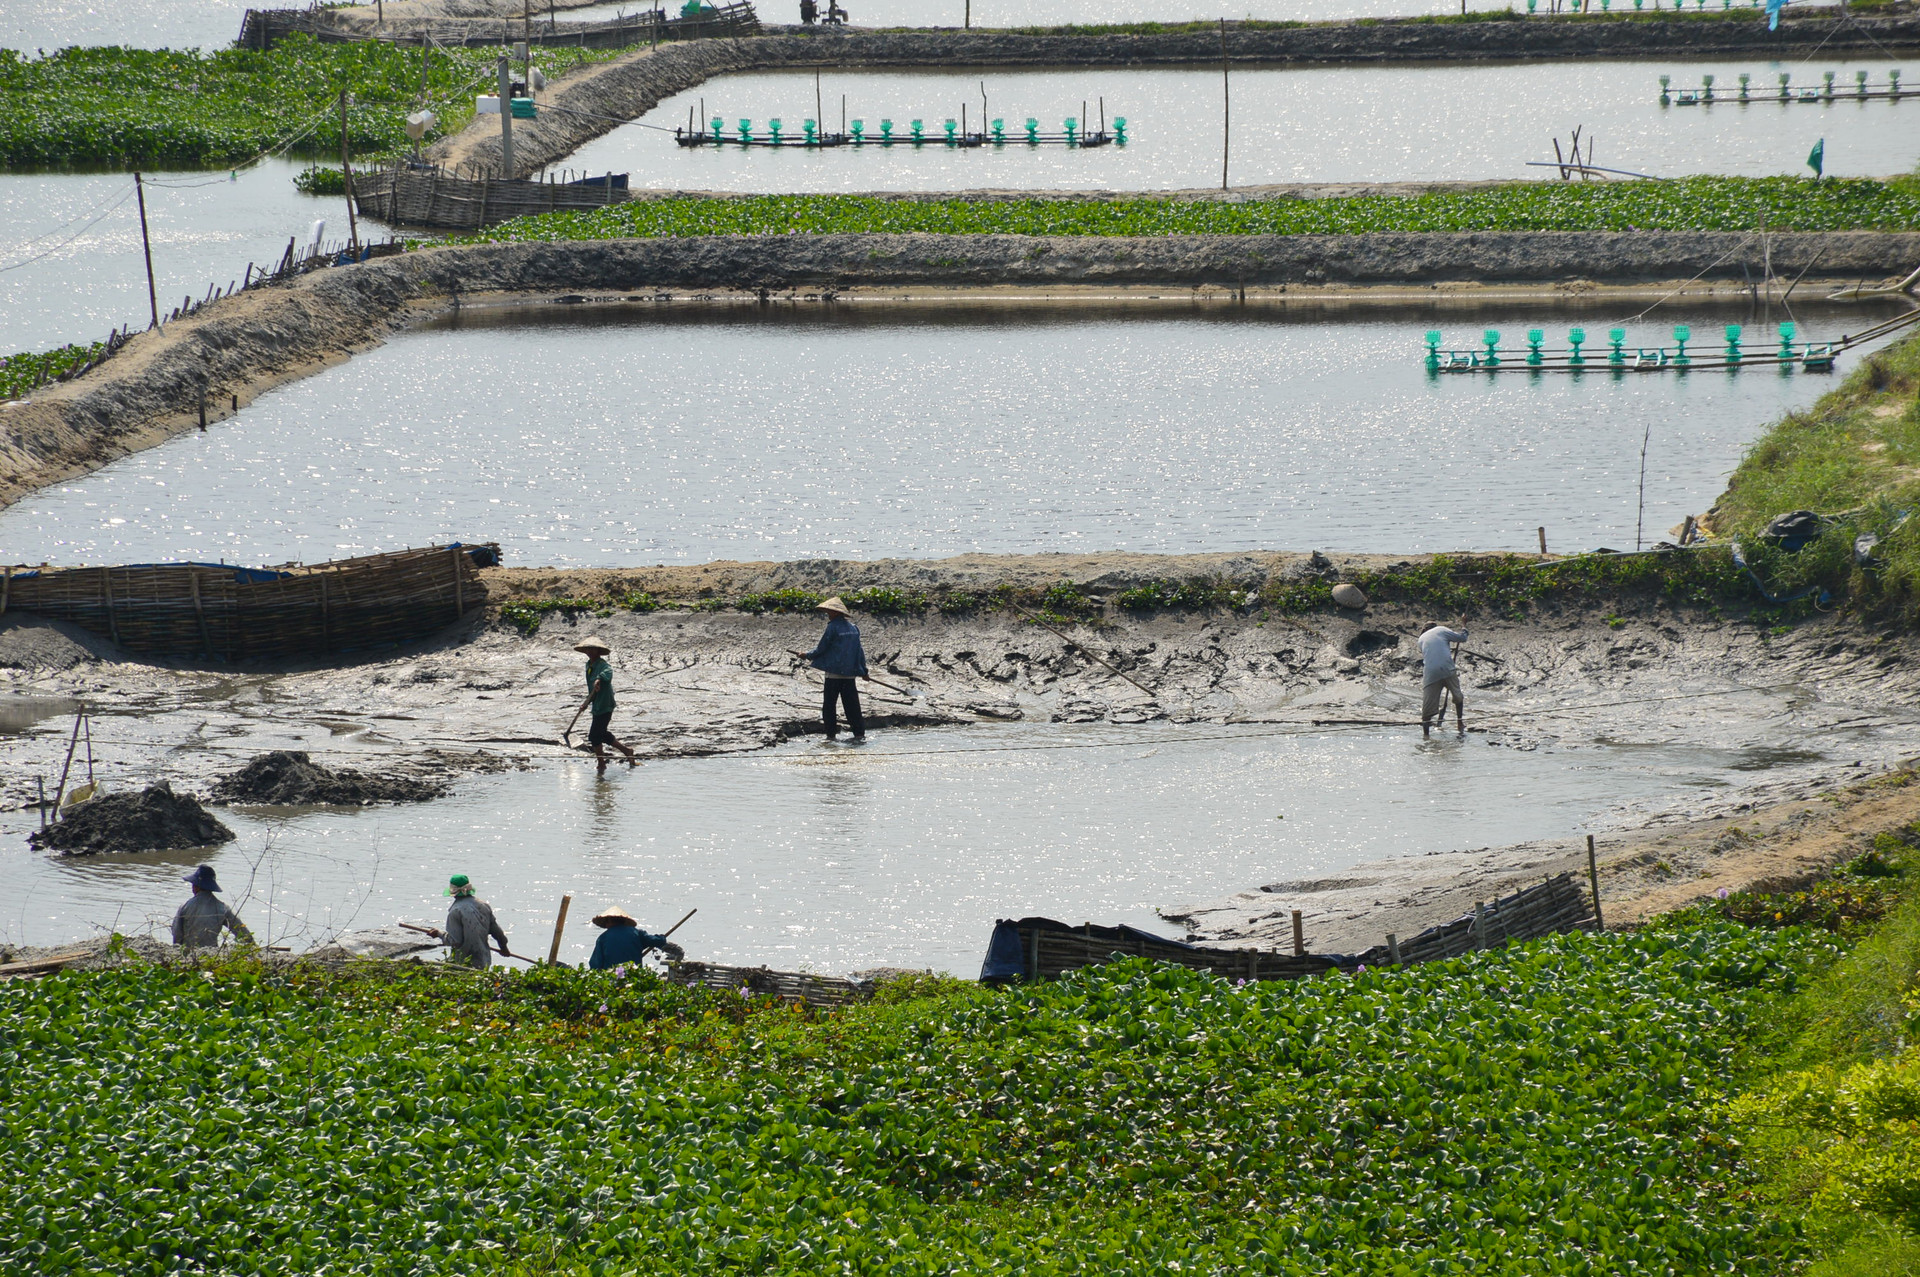 Người dân nuôi thủy sản cần sử dụng nguồn nước ngầm hợp lý để bảo vệ môi trường. Ảnh: Q.T